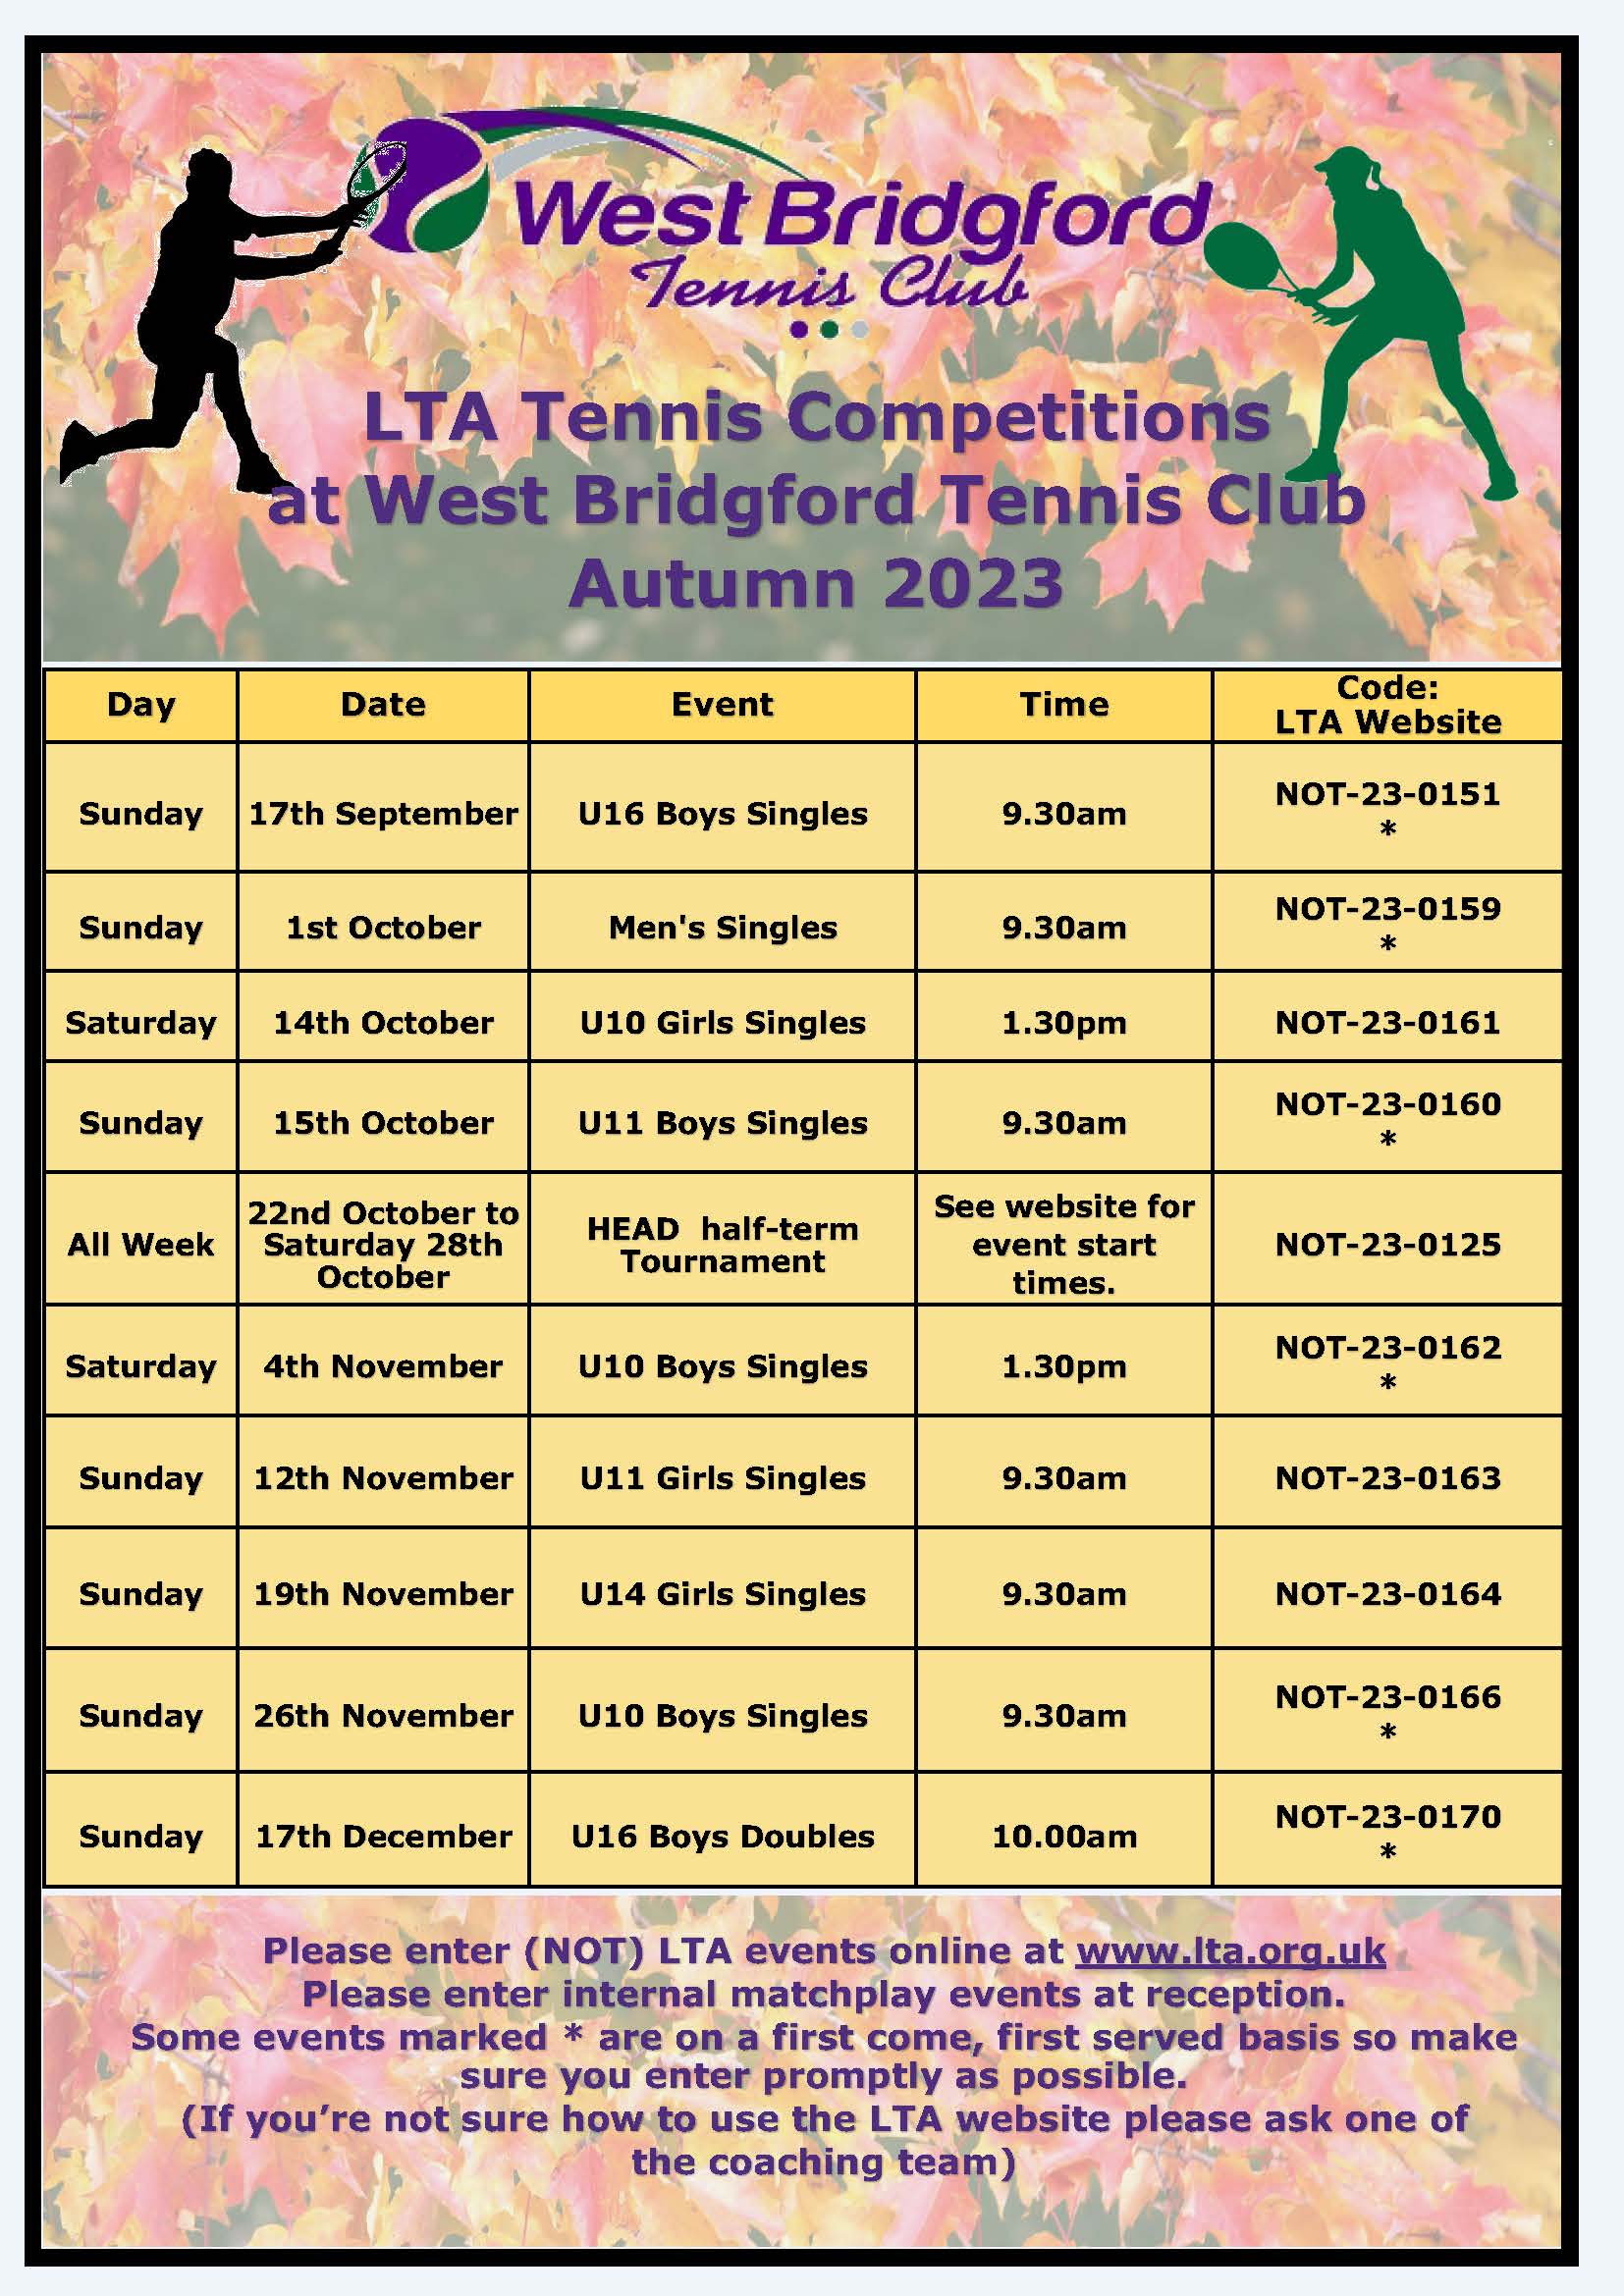 Autumn 2023 LTA Competitions